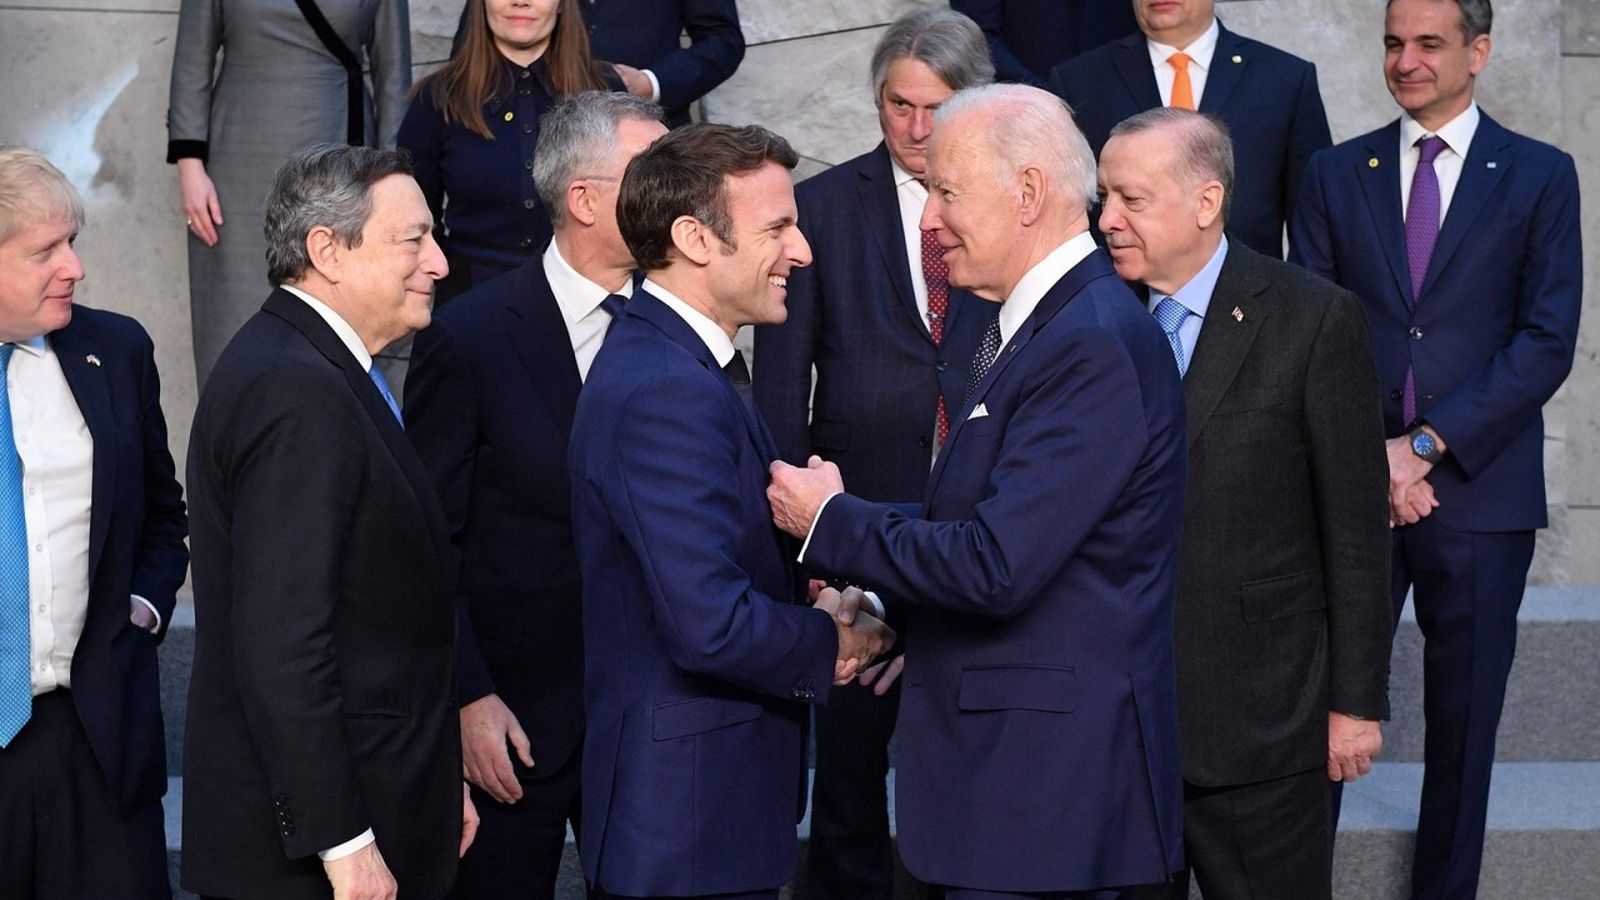 El presidente de EE.UU. Joe Biden saluda al francés, Emmanuel Macron en la cumbre de la OTAN en Bruselas. Foto: JOHN THYS / AFP